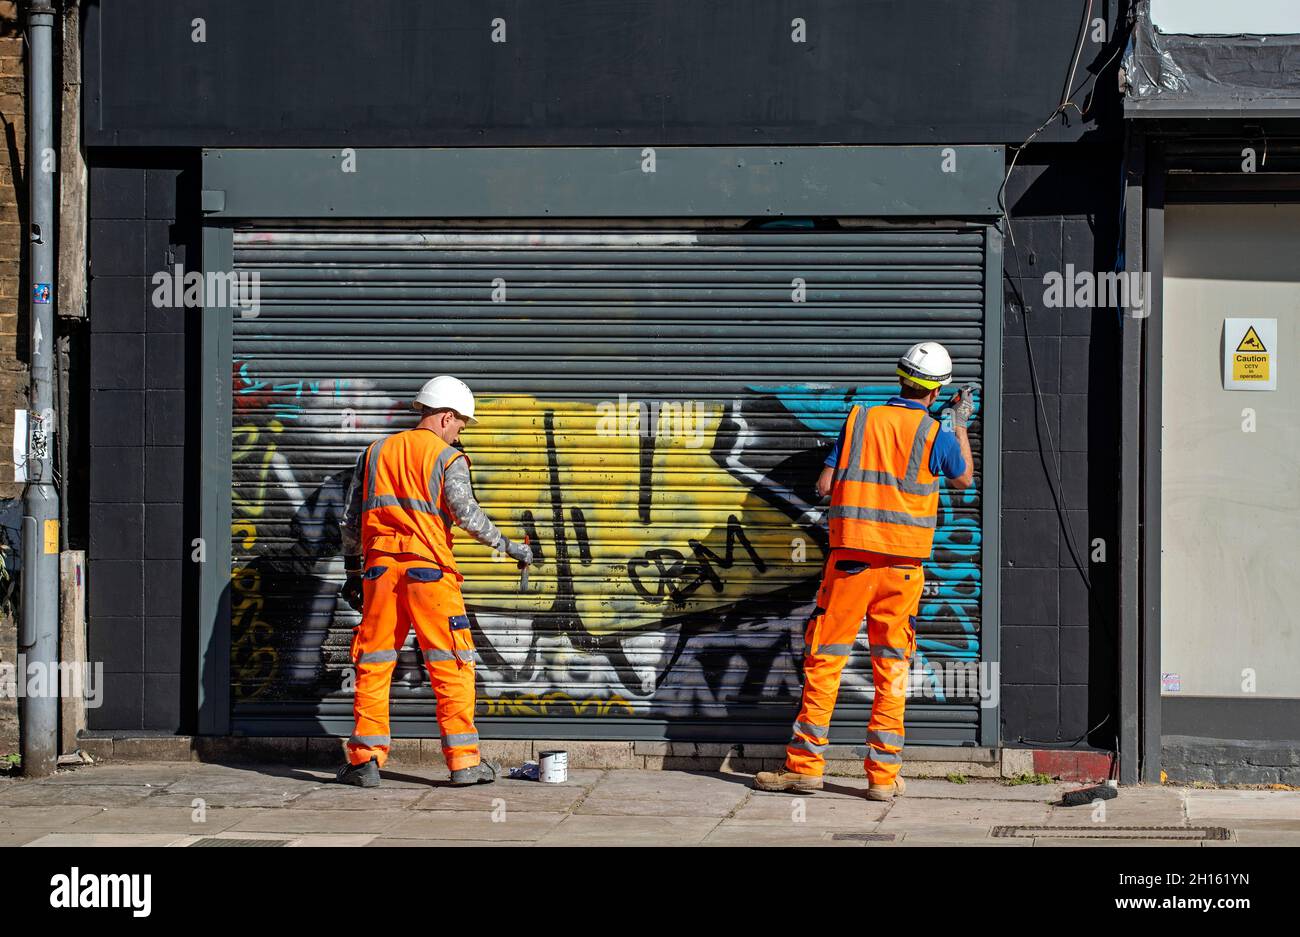 Zwei Männer Arbeiter tragen gut sichtbare Westen Entfernen Graffiti von Shop-Shutter durch Malerei über sie London Borough of Camden England Großbritannien Stockfoto